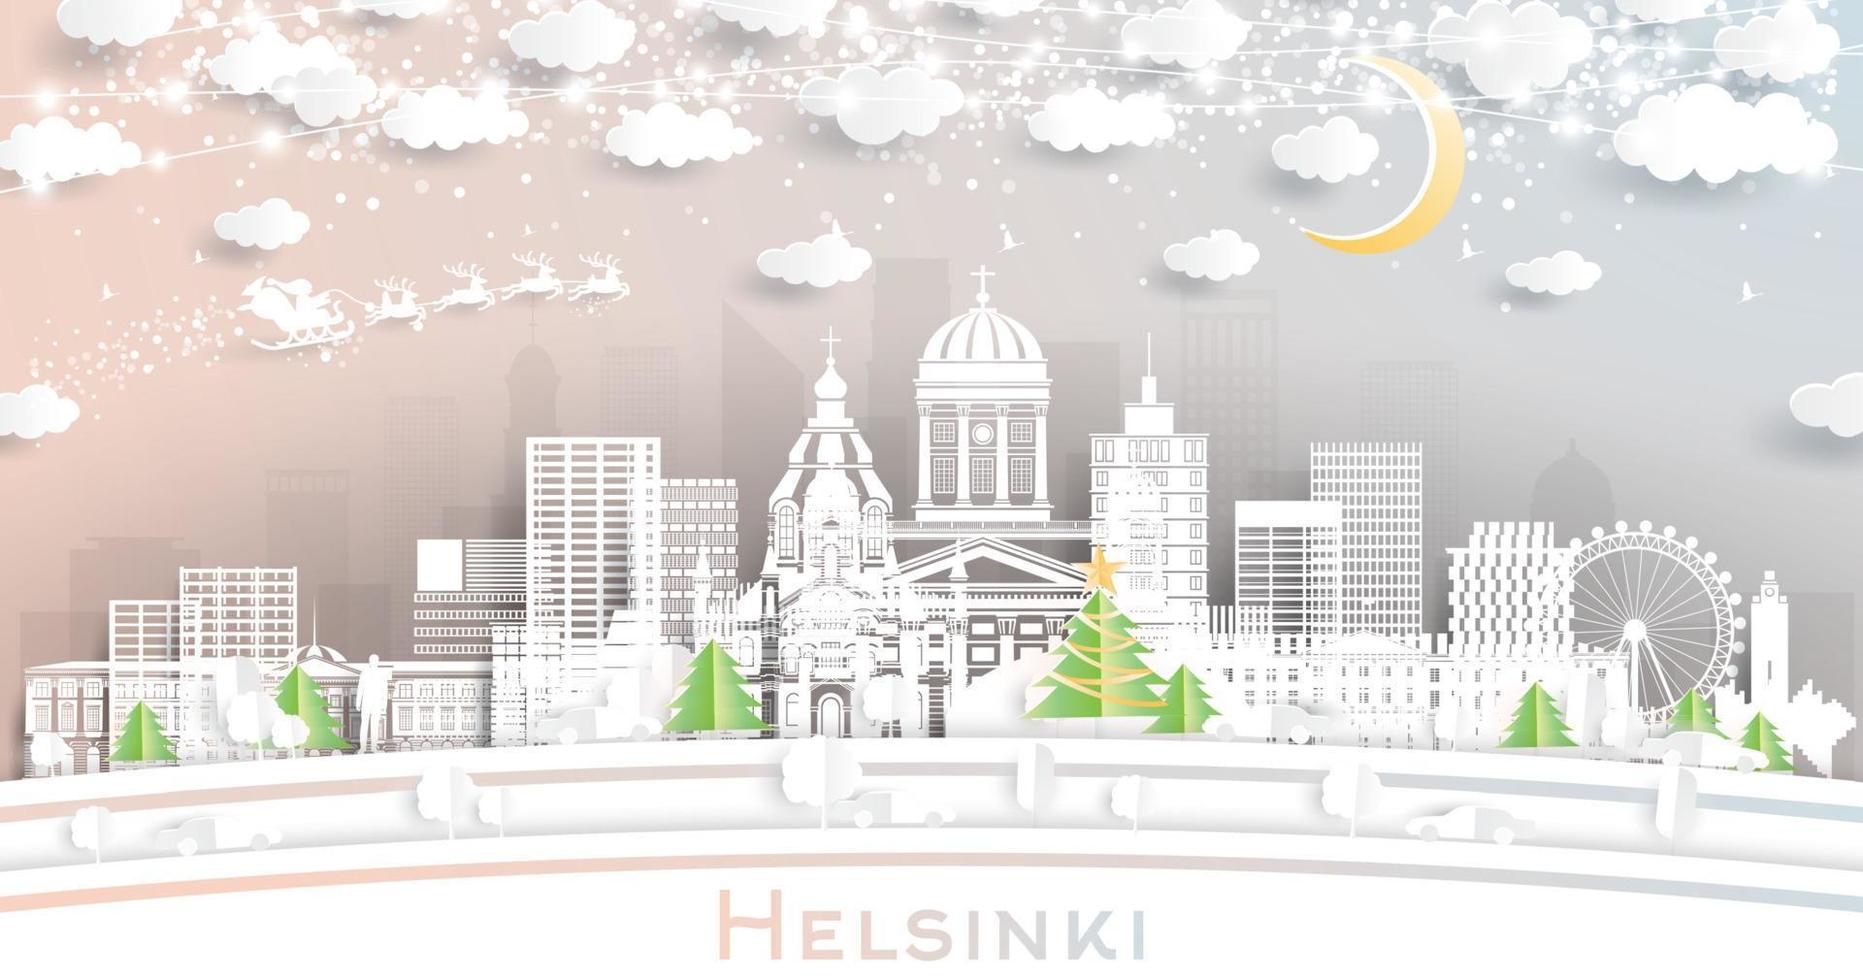 Helsinki Finland stad horizon in papier besnoeiing stijl met sneeuwvlokken, maan en neon guirlande. vector